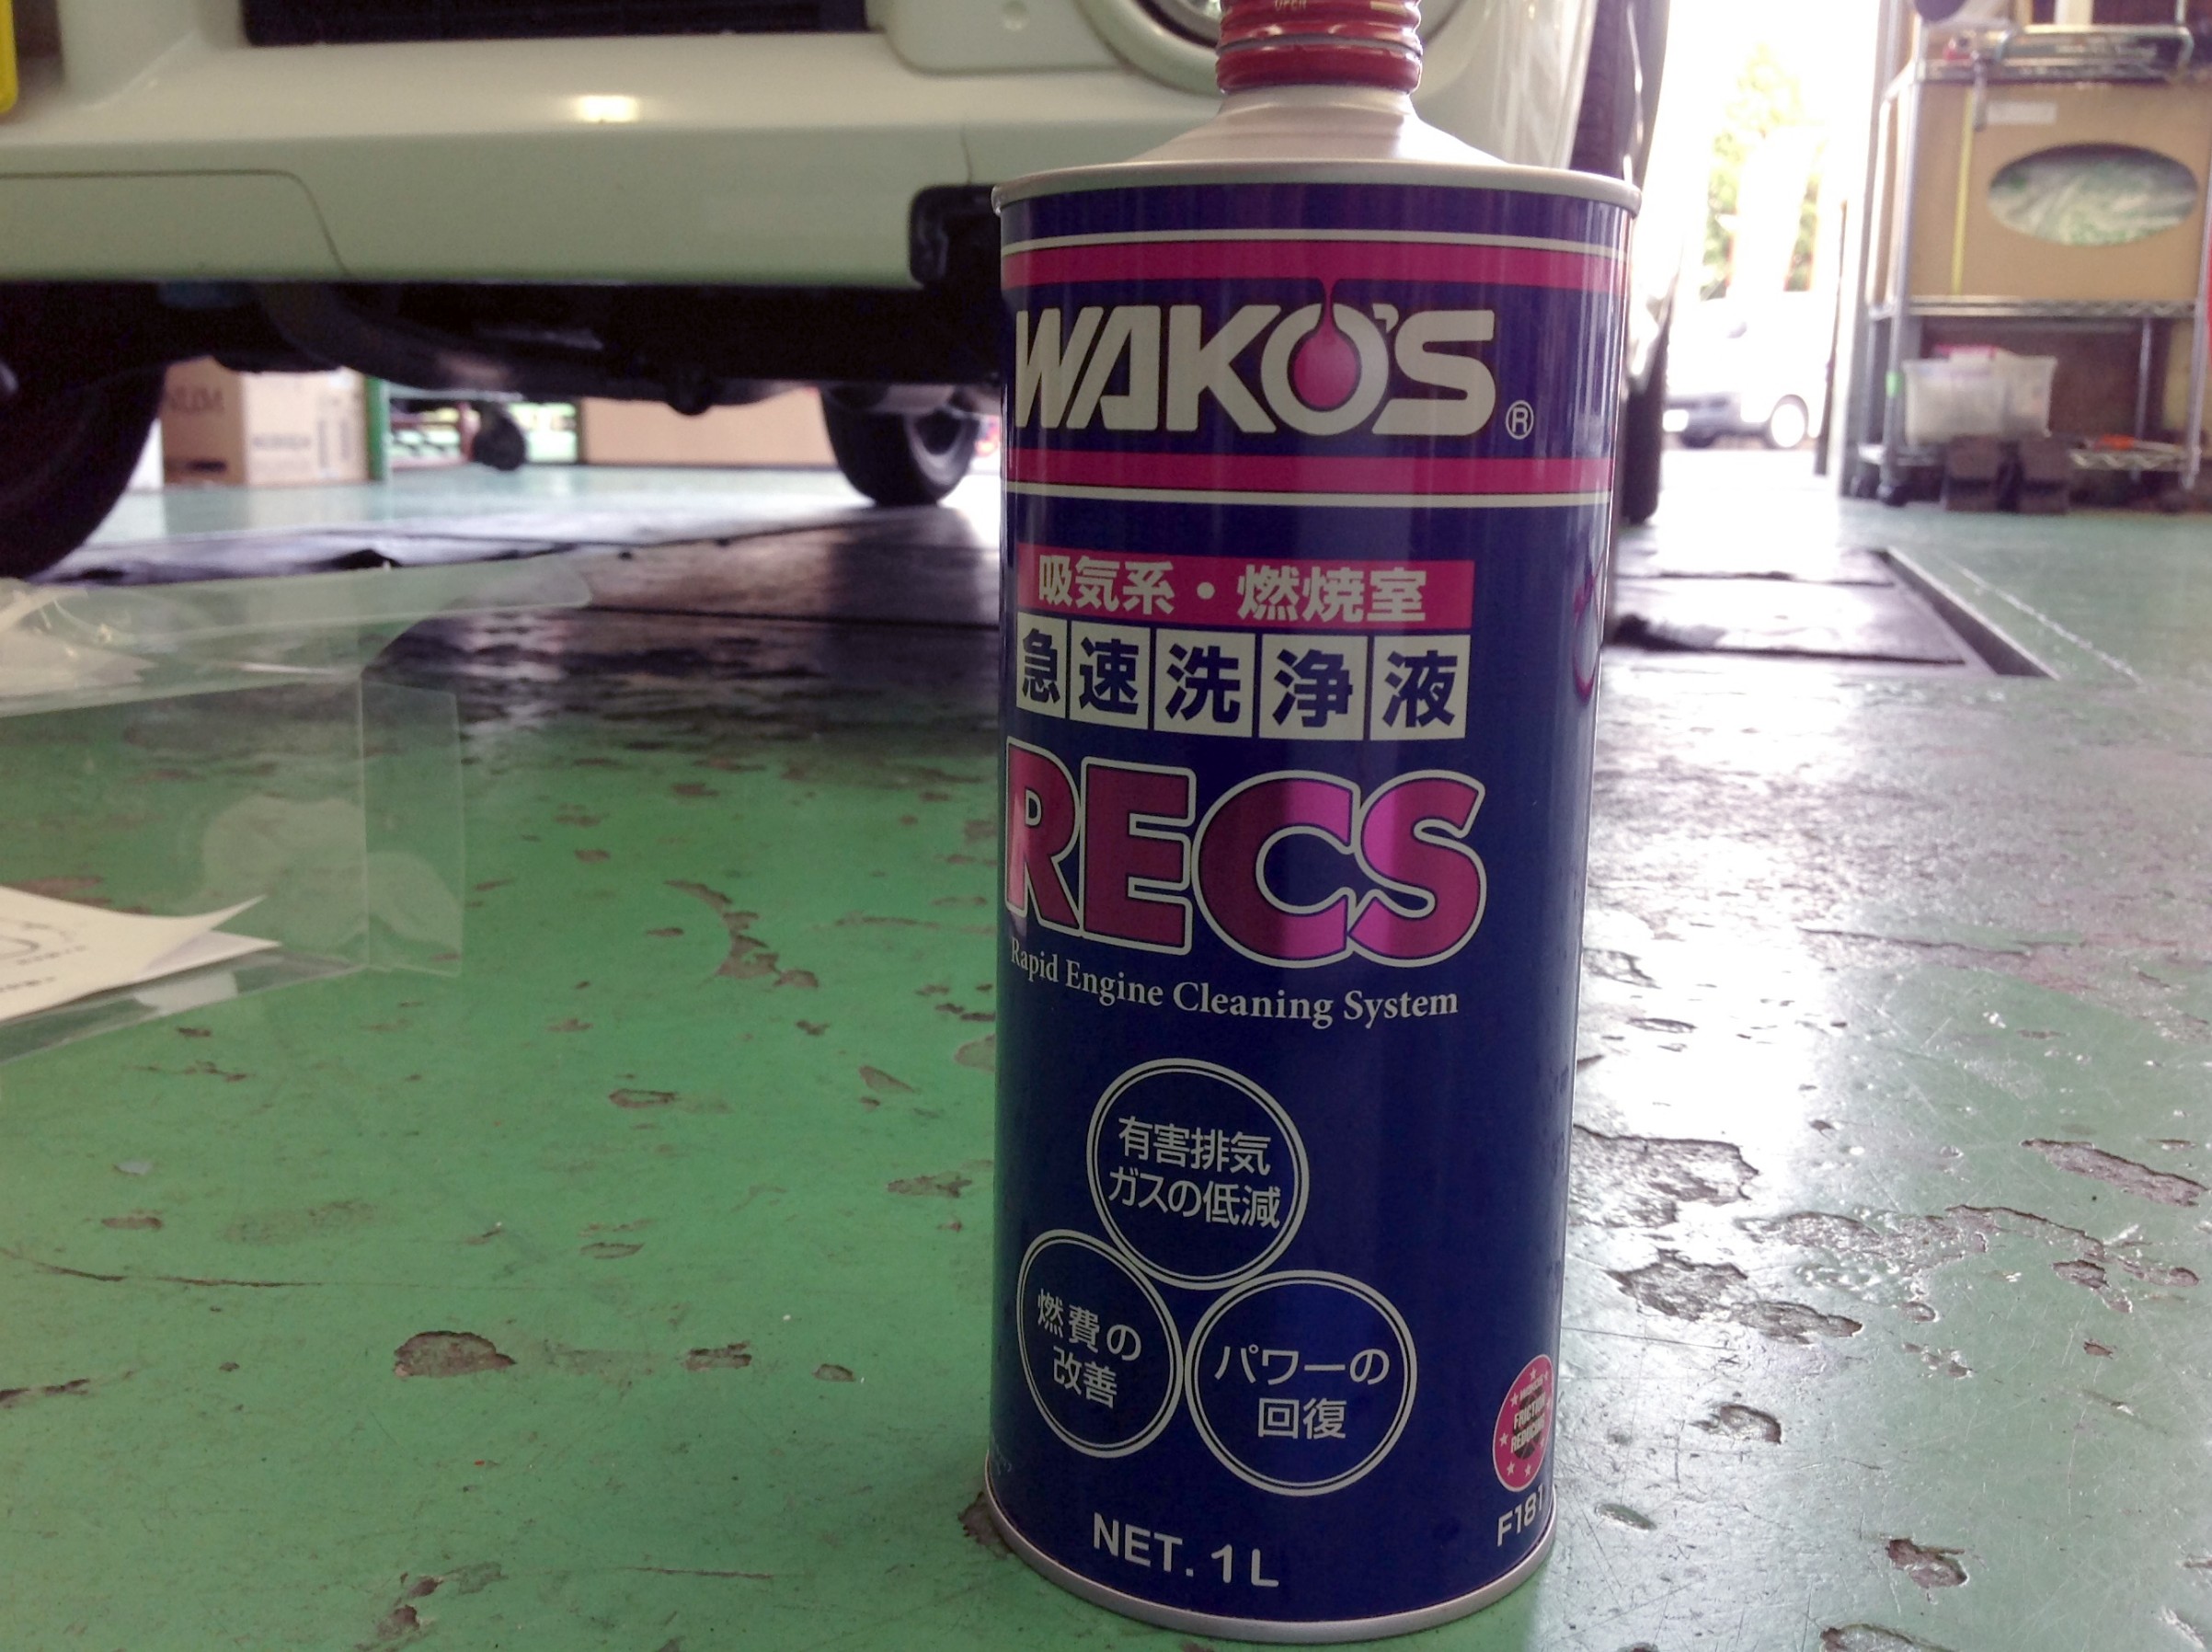 WAKO’S「レックス」始めました！ | メンテナンス商品 パーツ取付 > 各種用品取付 | スタッフ日記 | タイヤ館 草津 | タイヤから